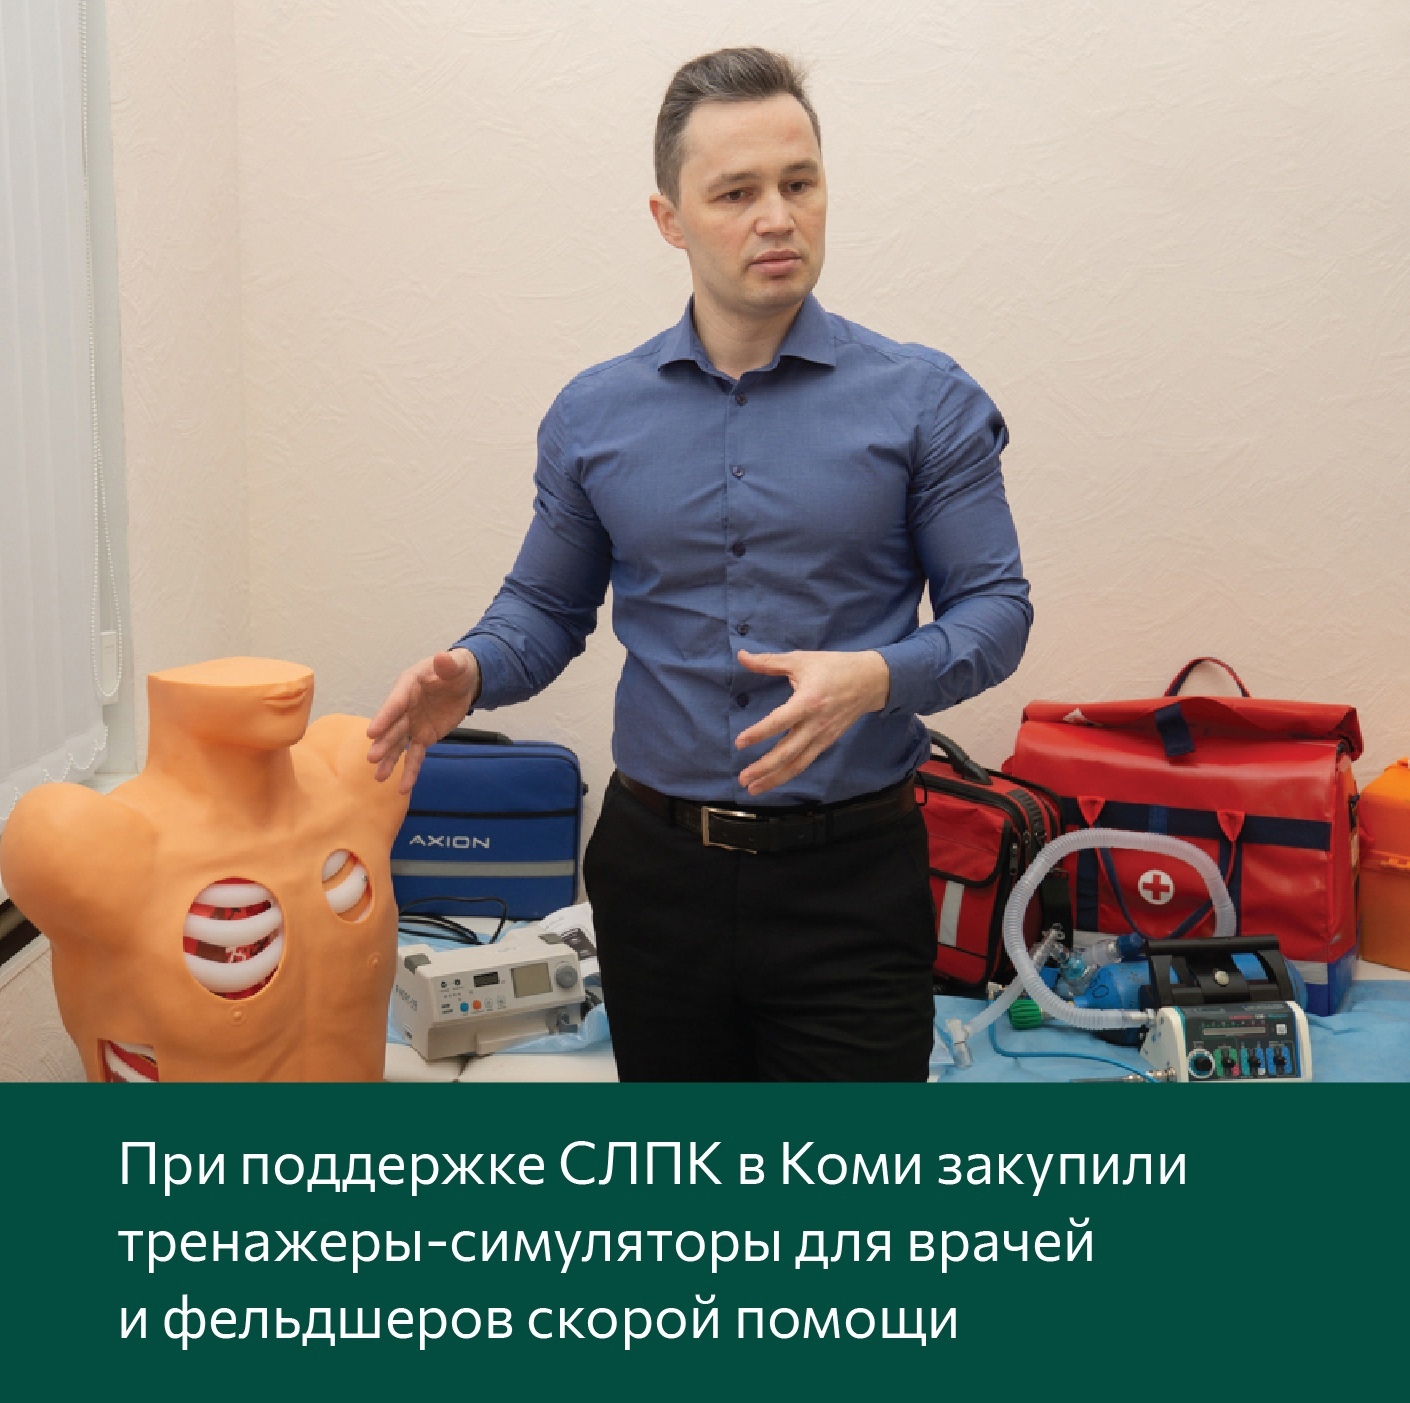 При поддержке СЛПК в Коми закупили тренажеры-симуляторы для врачей и фельдшеров скорой помощи